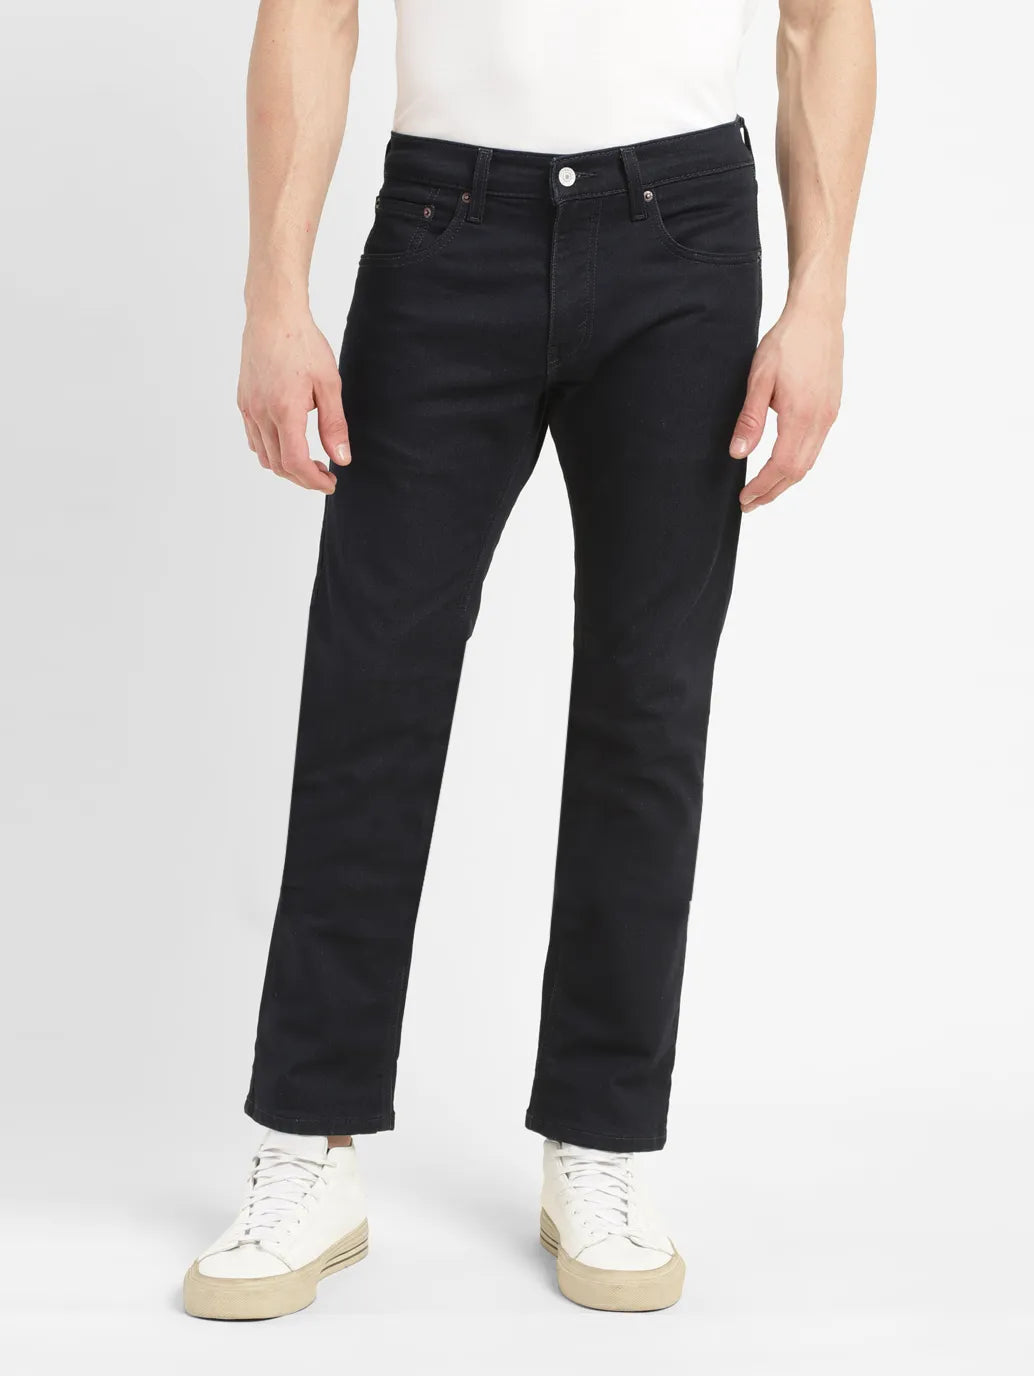 Men's 65504 Dark Indigo Skinny Jeans